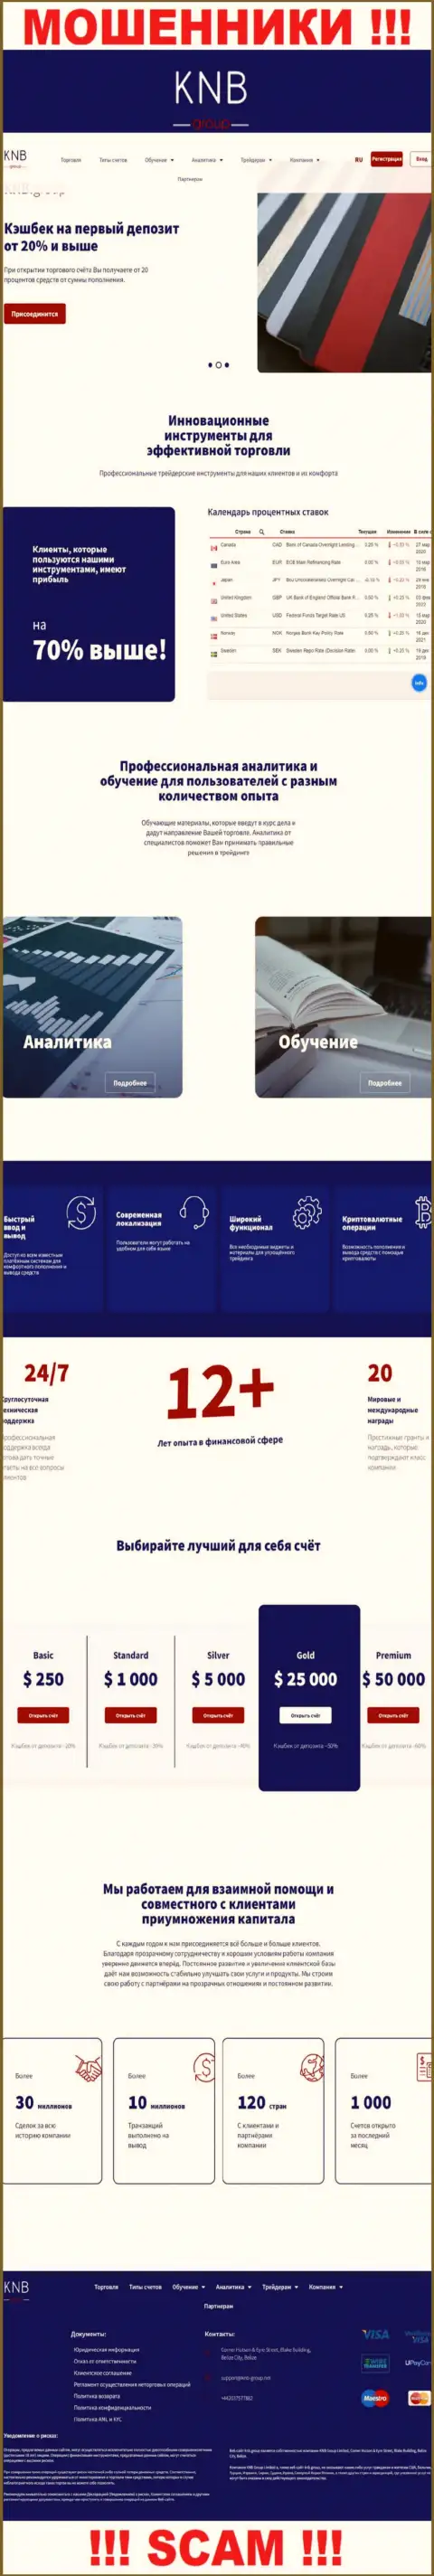 Обзор официального сайта мошенников KNB Group Limited